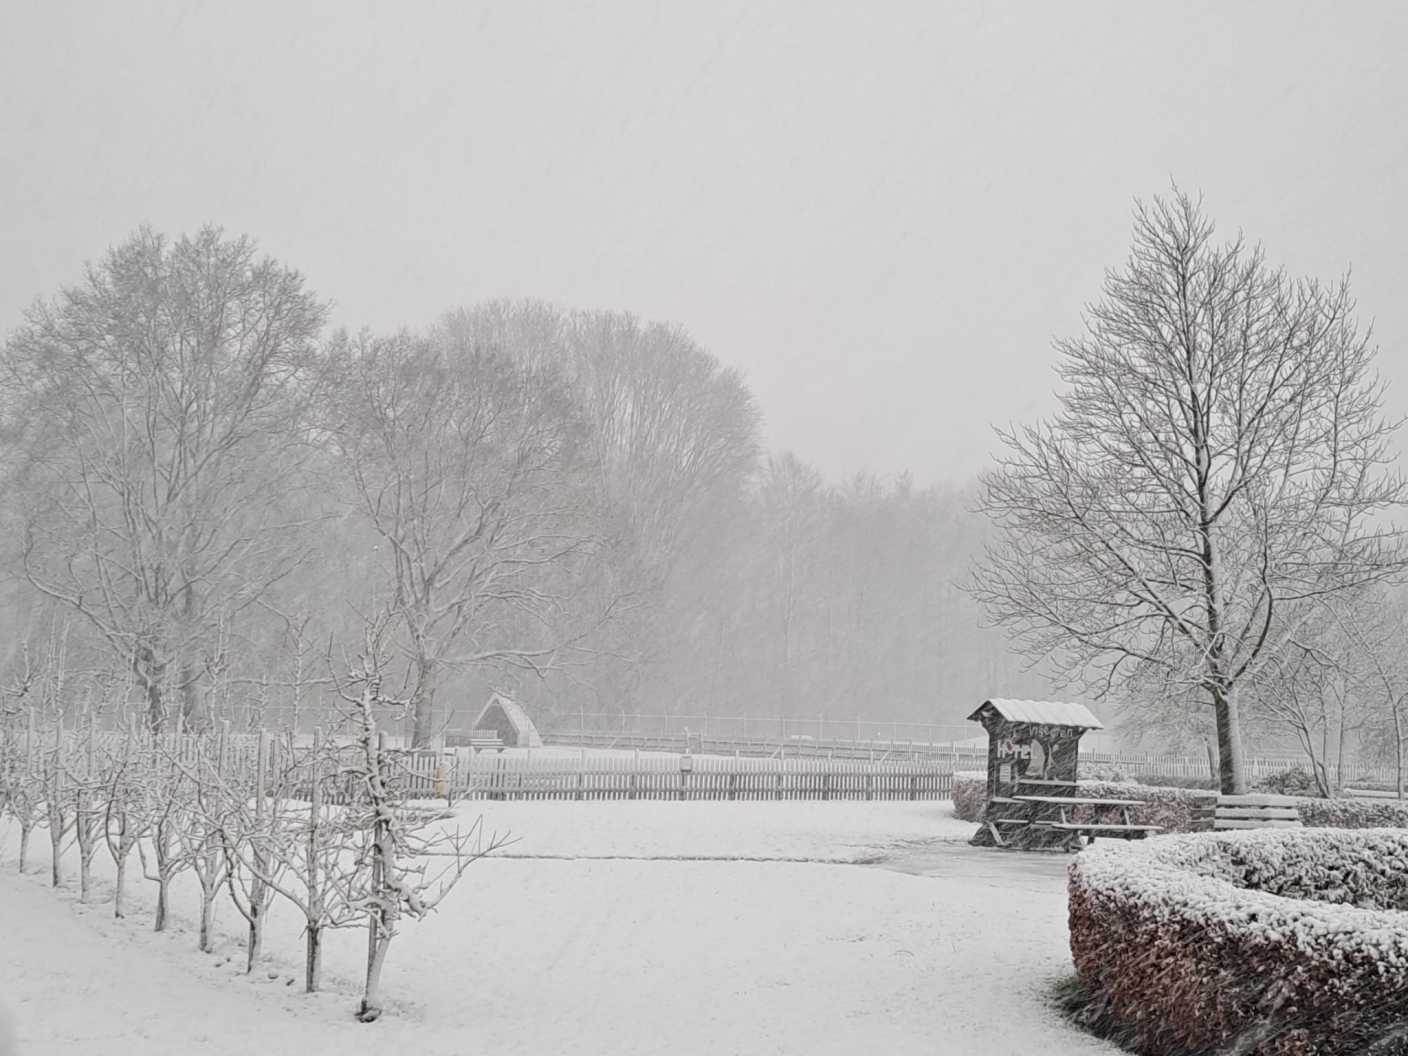 Foto gemaakt door Robert de Vries - Emmeloord - Ook bij Emmeloord. Het sneeuwt nog behoorlijk. 